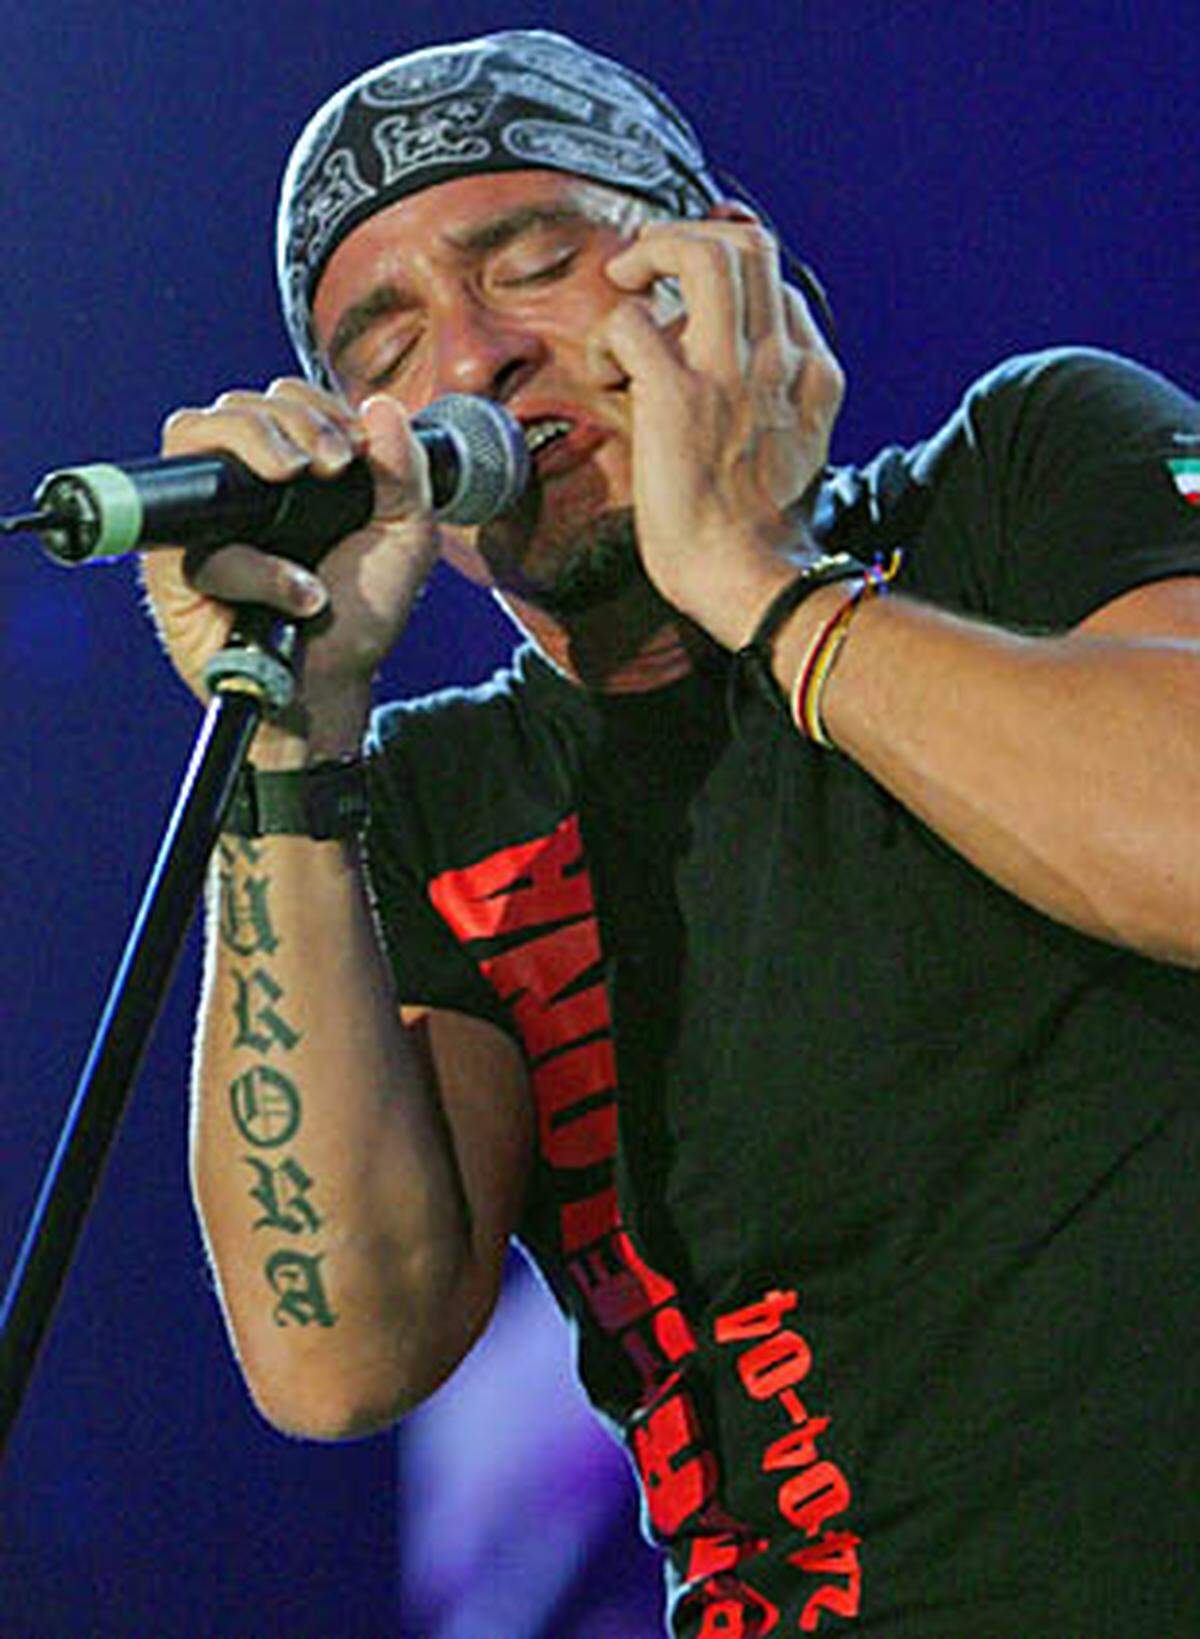 Eros Ramazotti trägt einen Schriftzug auf seinem rechten, äußeren Unterarm: "Aurora", so heißt seine Tochter.